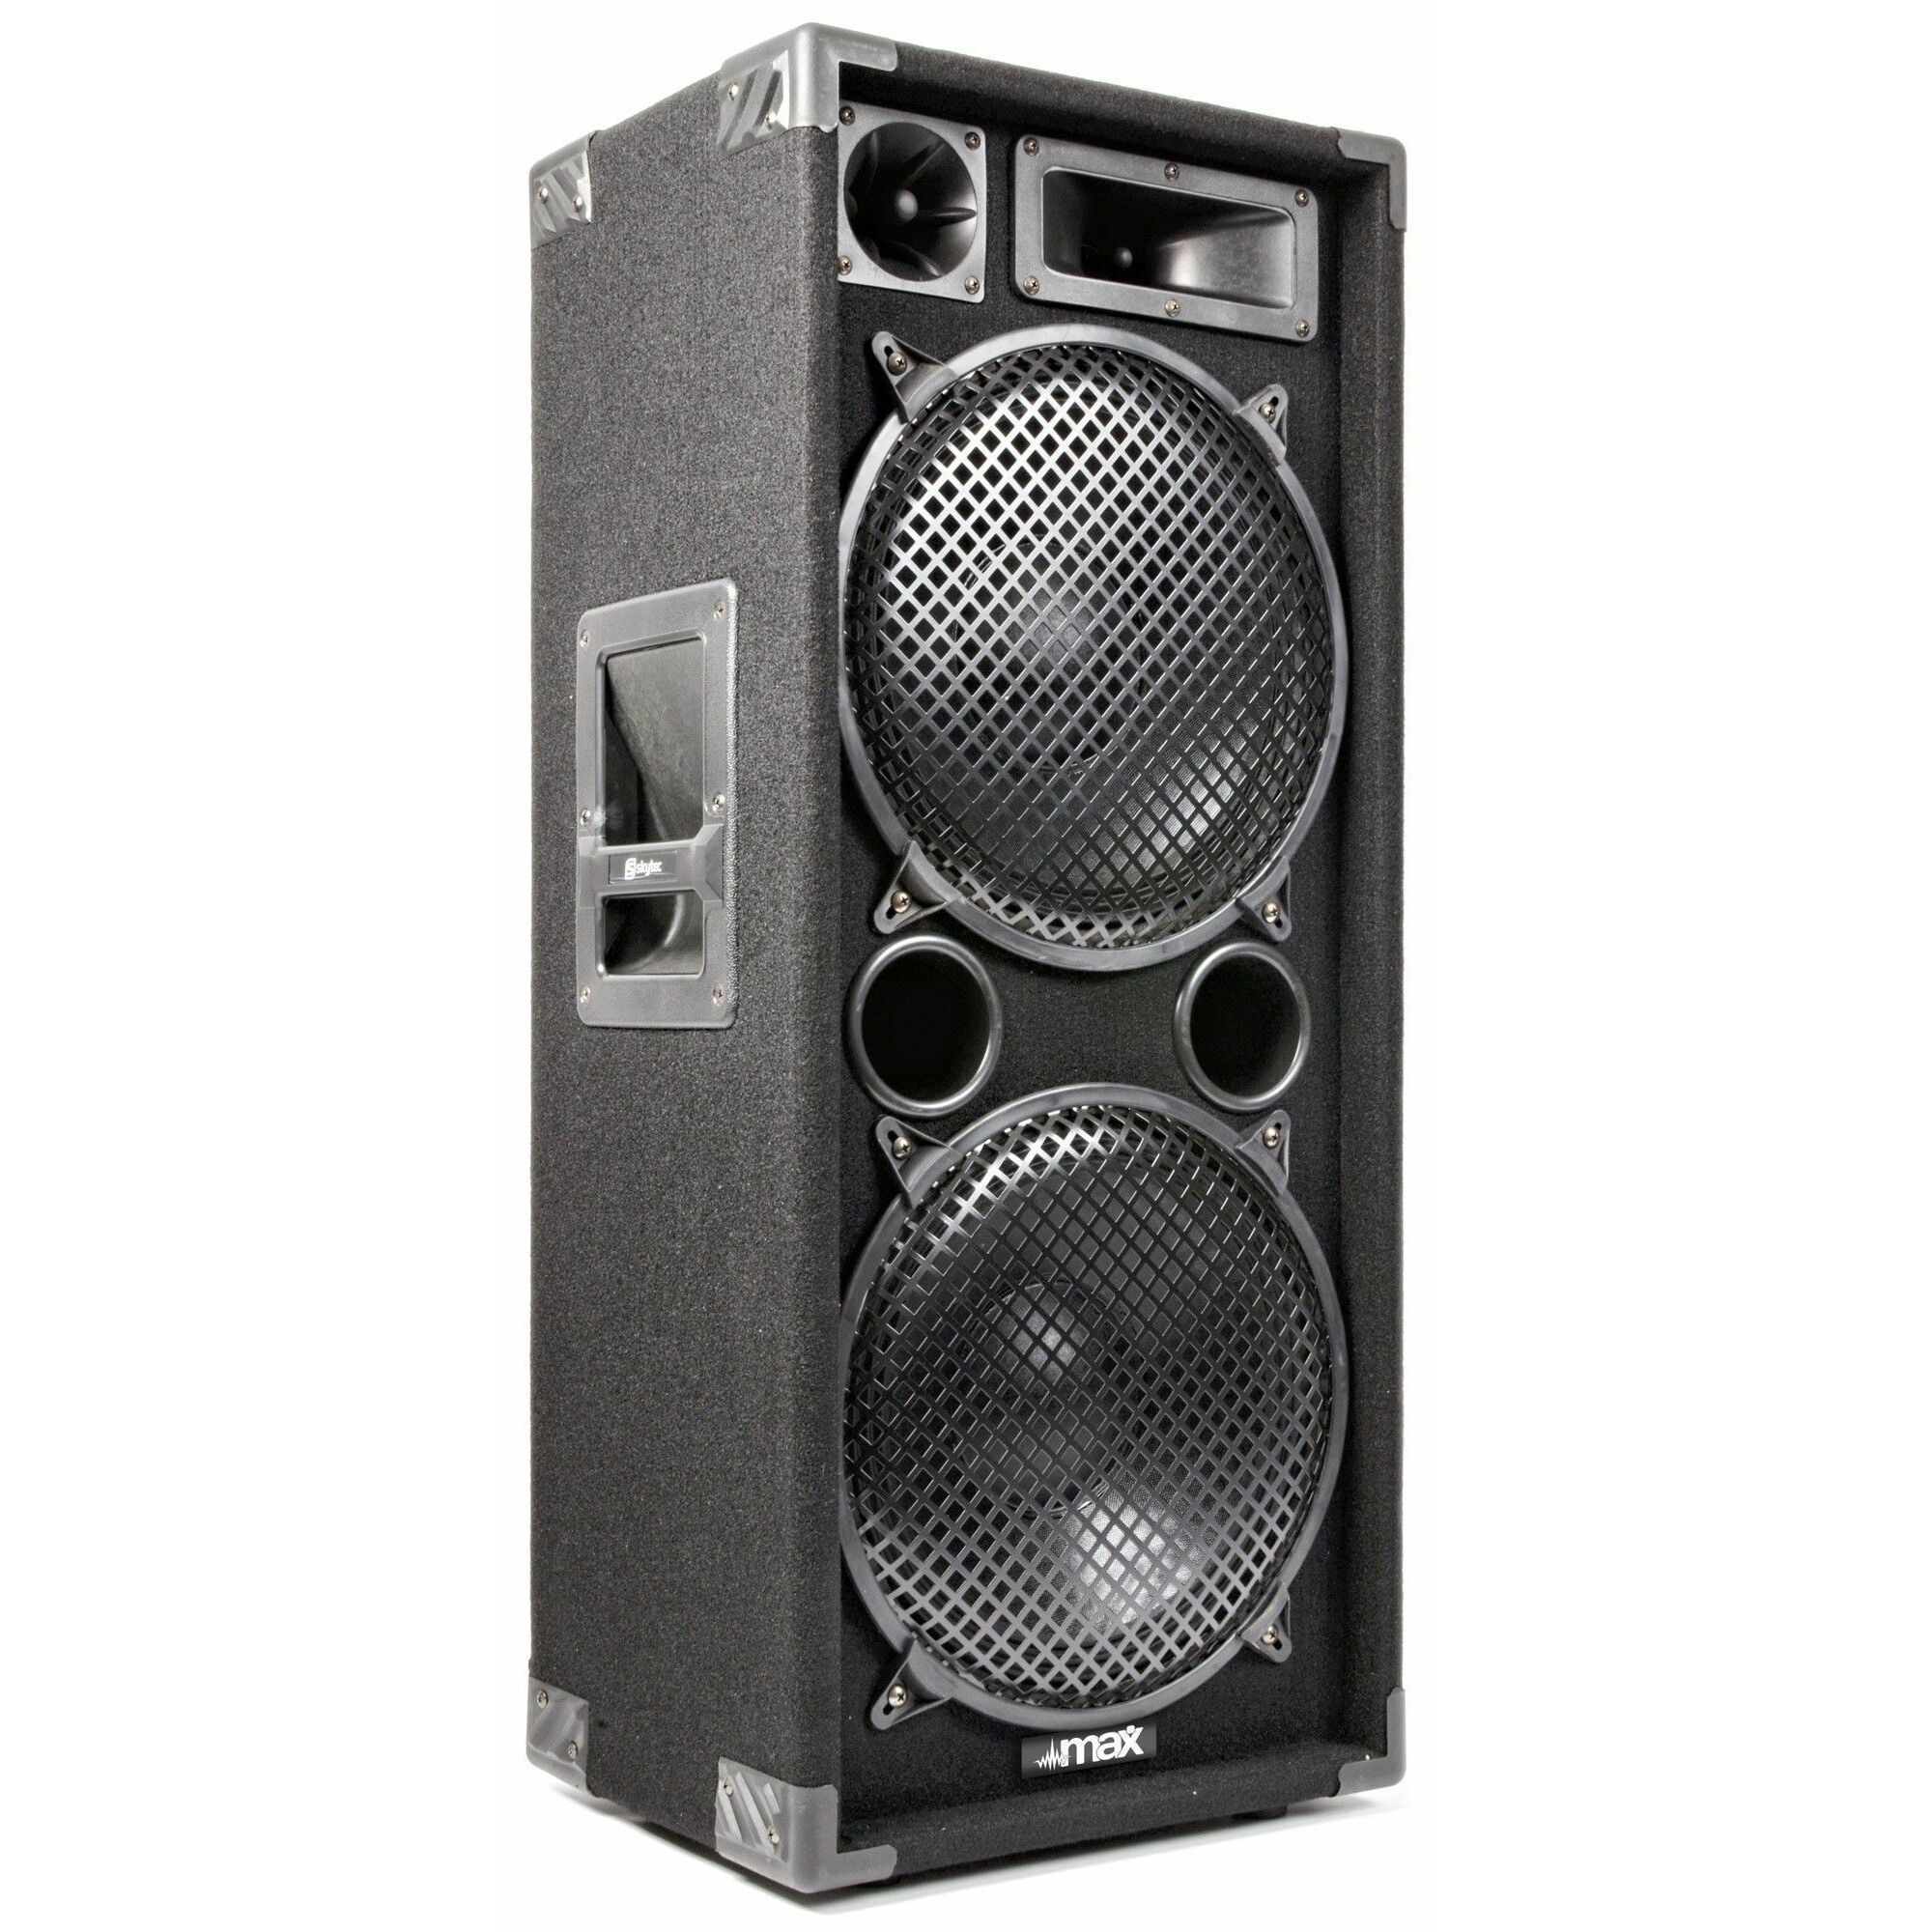 MAX212 Kit Sono DJ, Amplificateur et Table de Mixage - 2800W